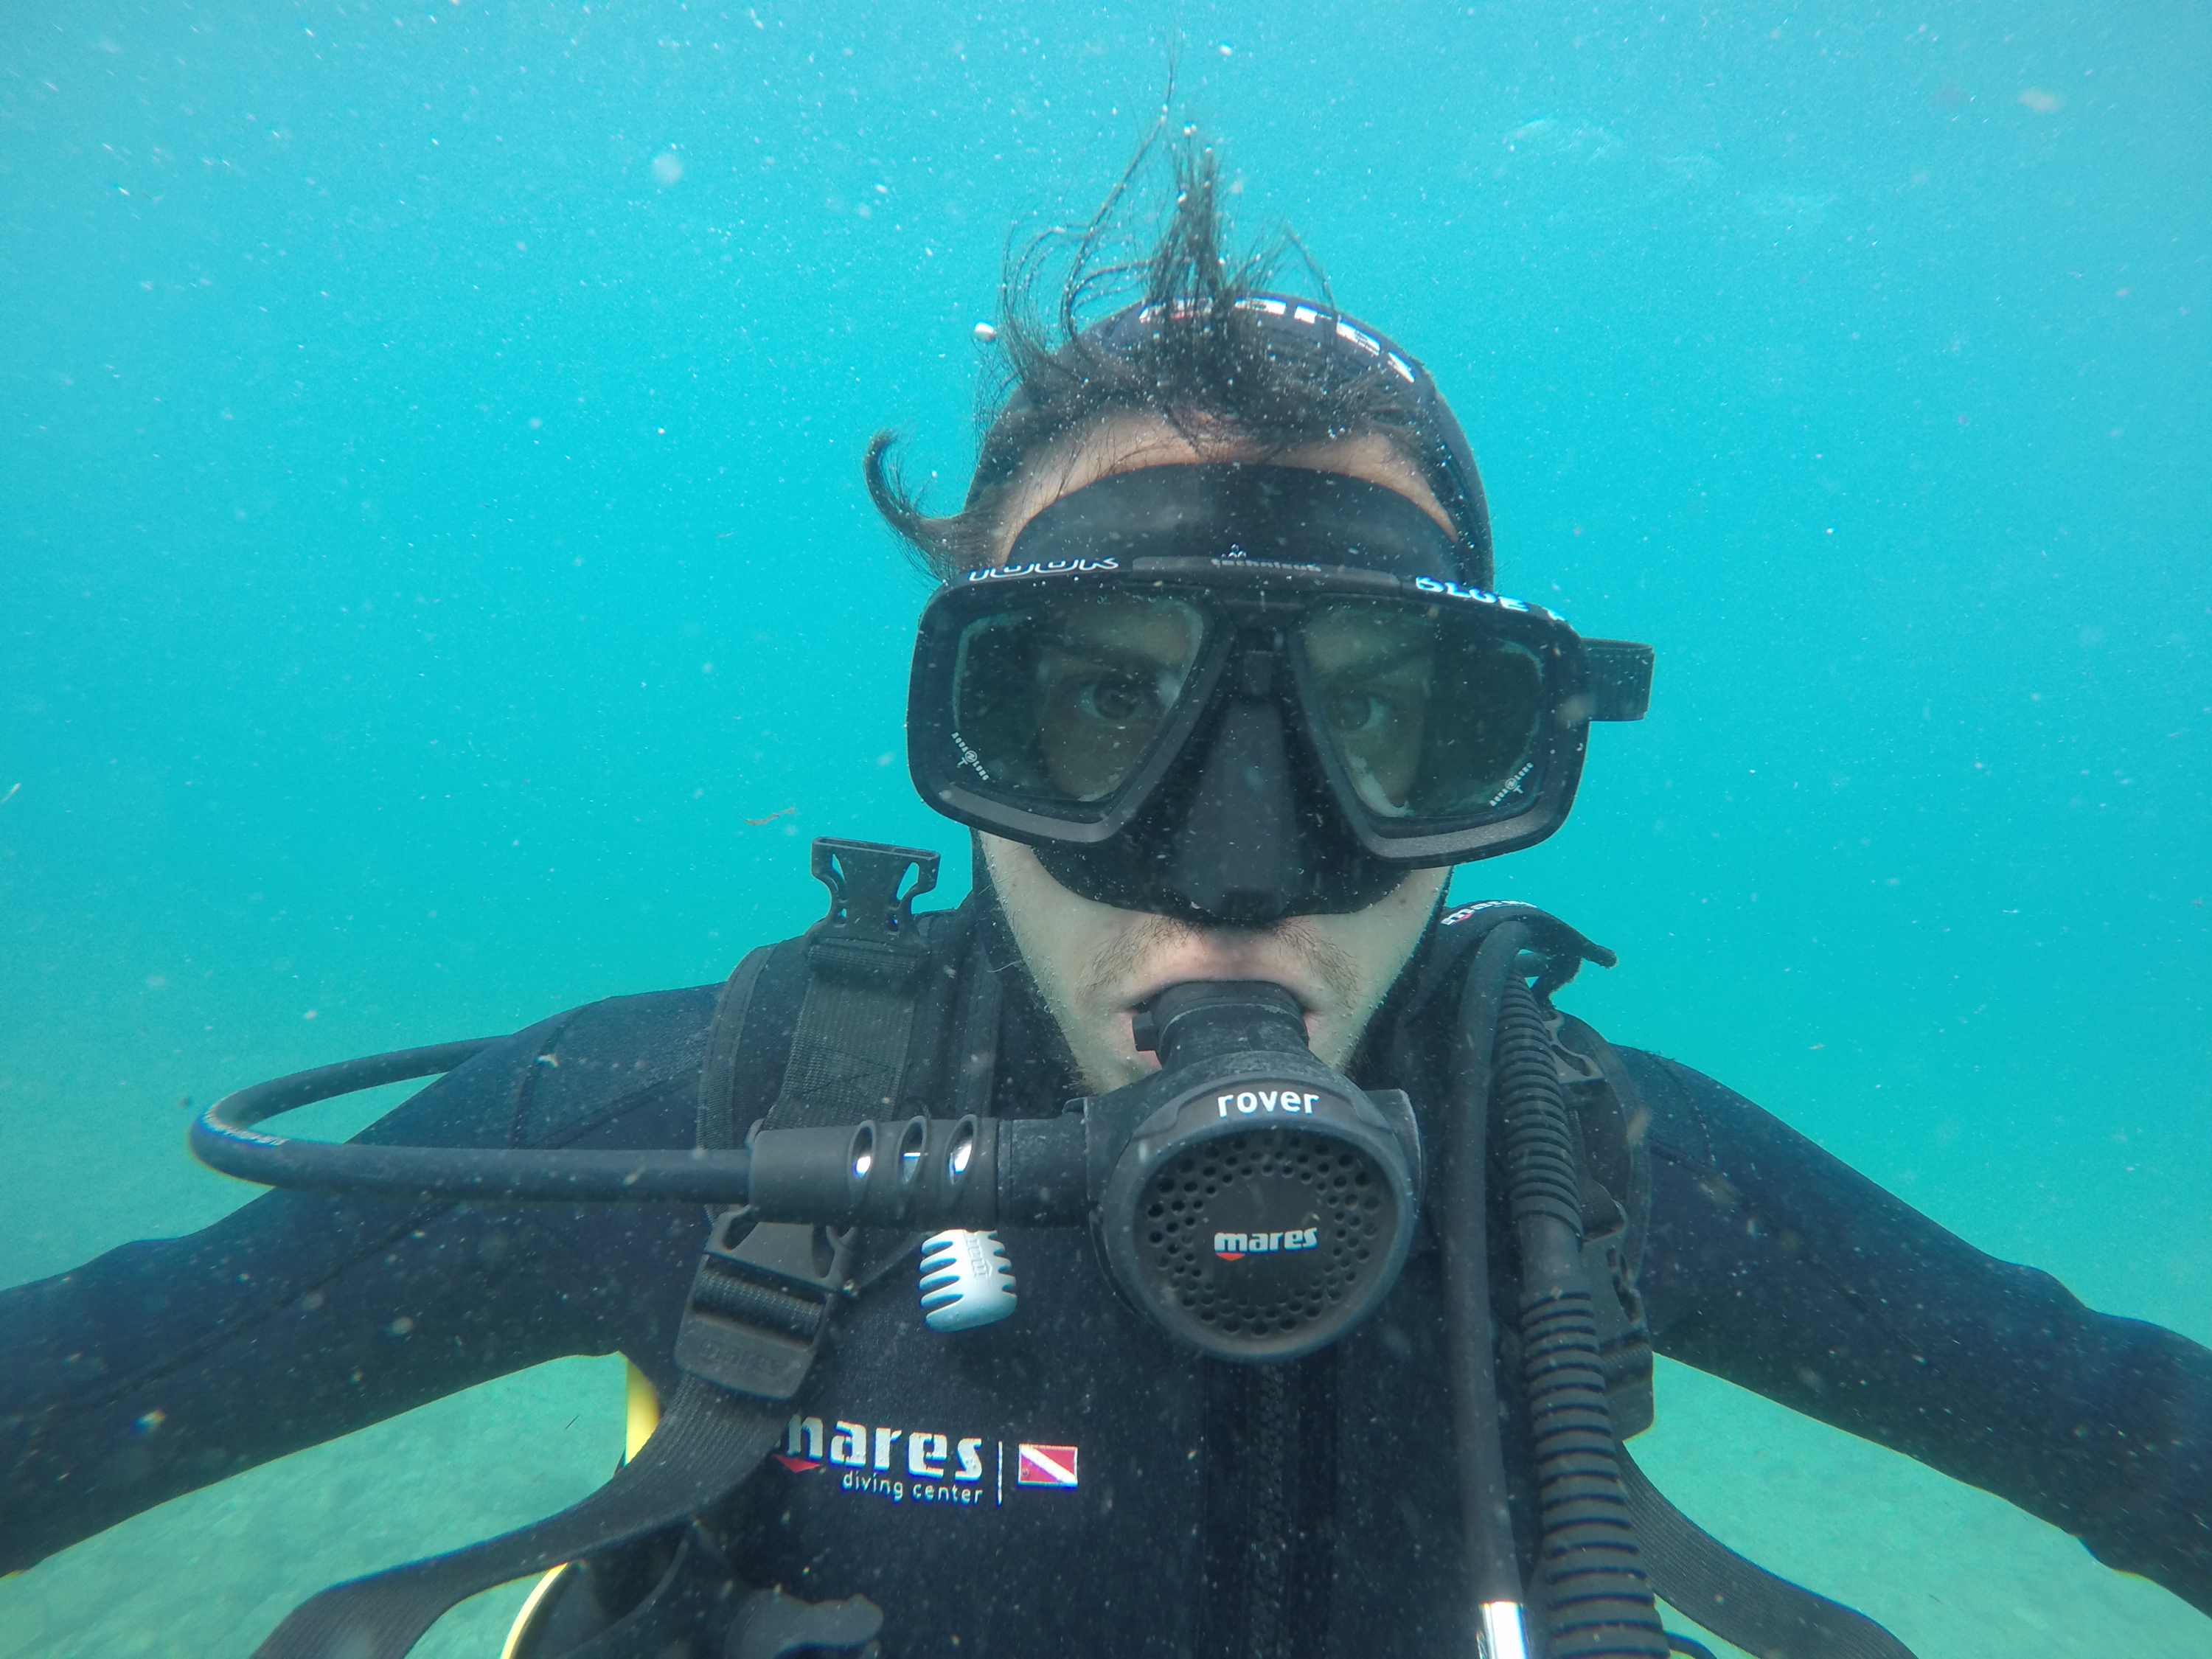 A photo of me in the ocean in scuba gear